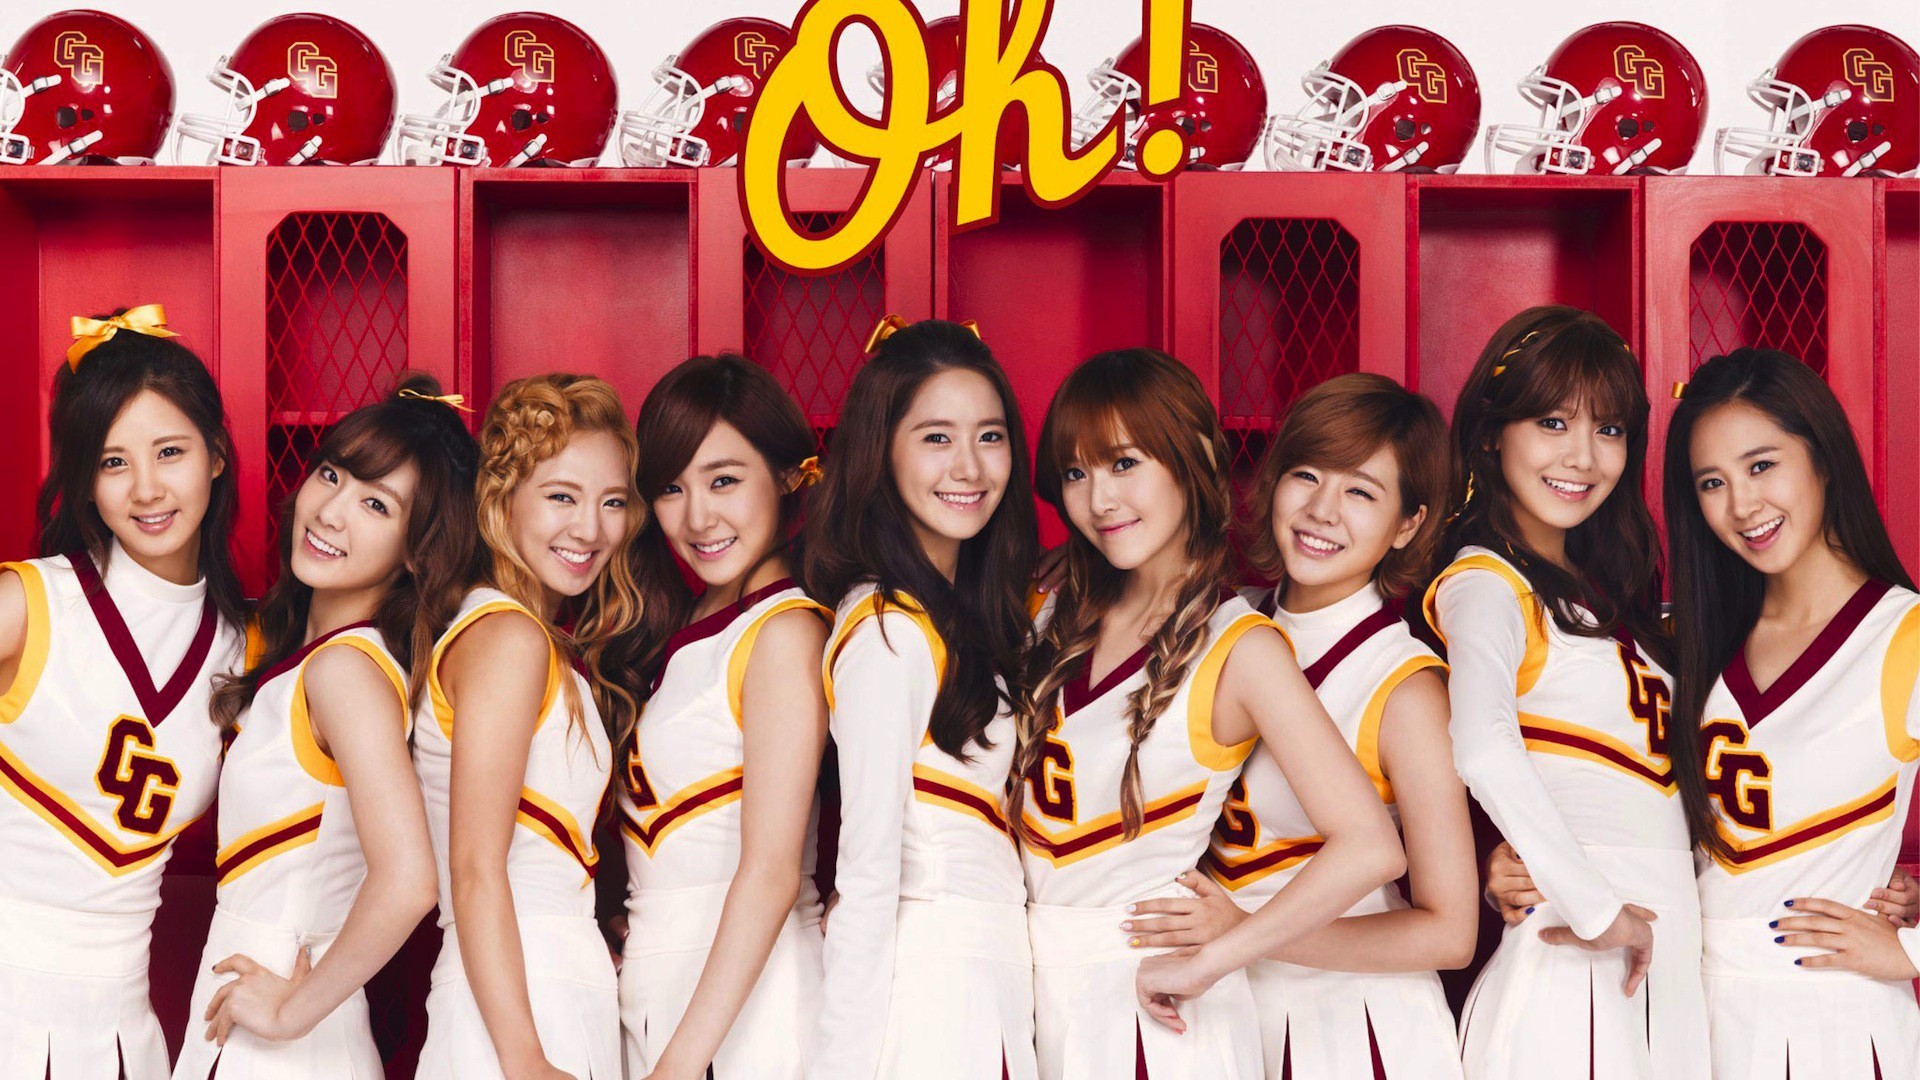 People 1920x1080 SNSD Girls' Generation Asian model musician Korean cheerleaders brunette group of women women smiling looking at viewer helmet blonde dark hair locker room women indoors indoors